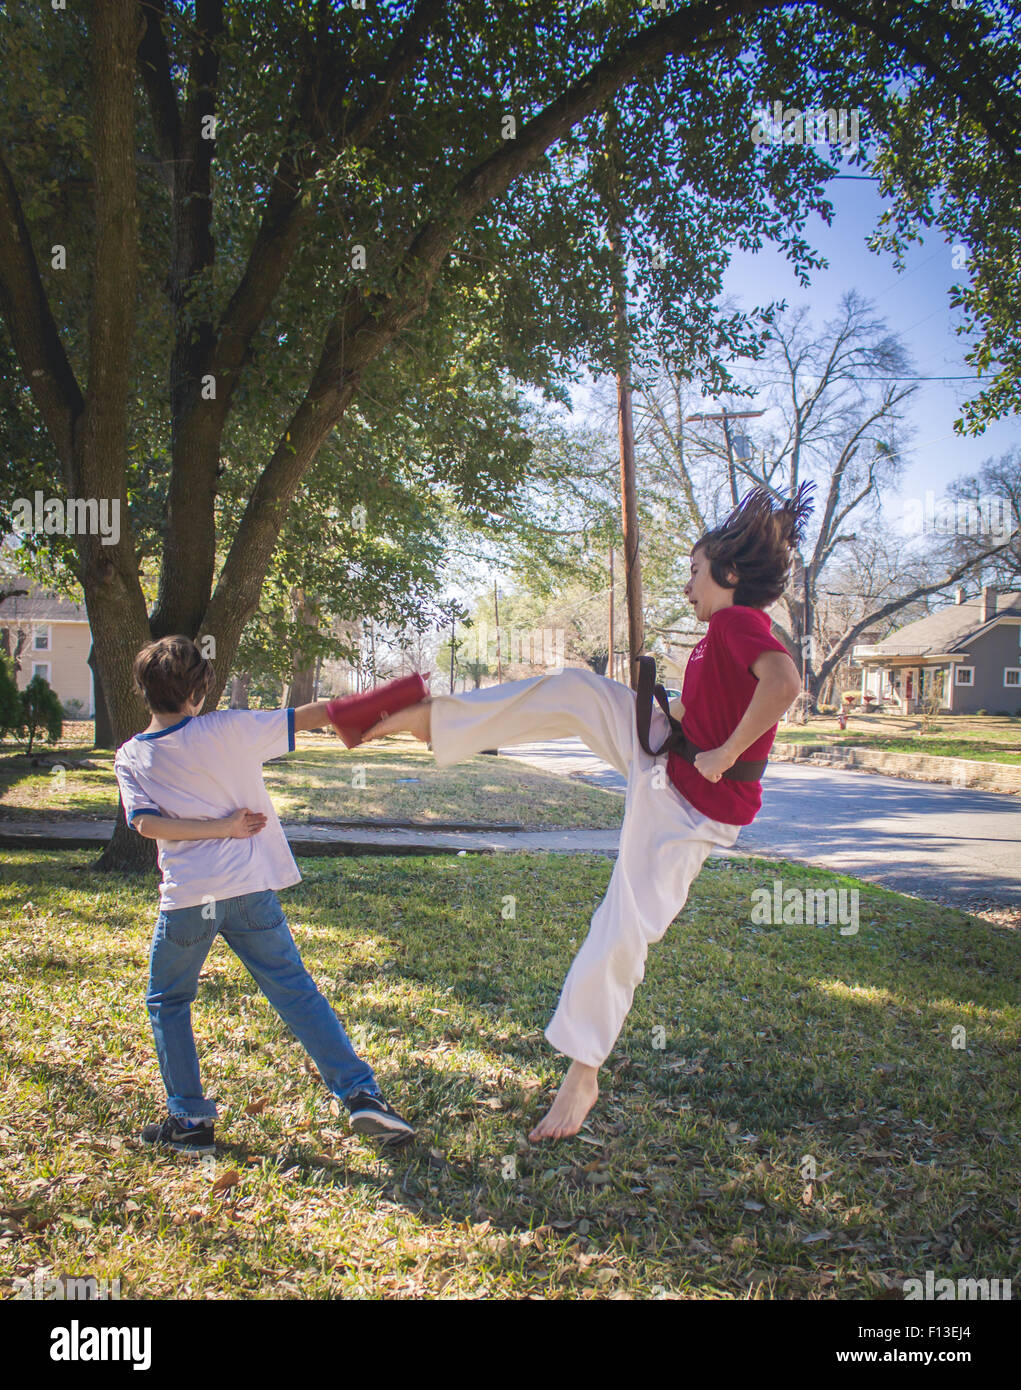 Ein Junge ist einen Karate-tritt in die Luft, während außerhalb tun. Stockfoto